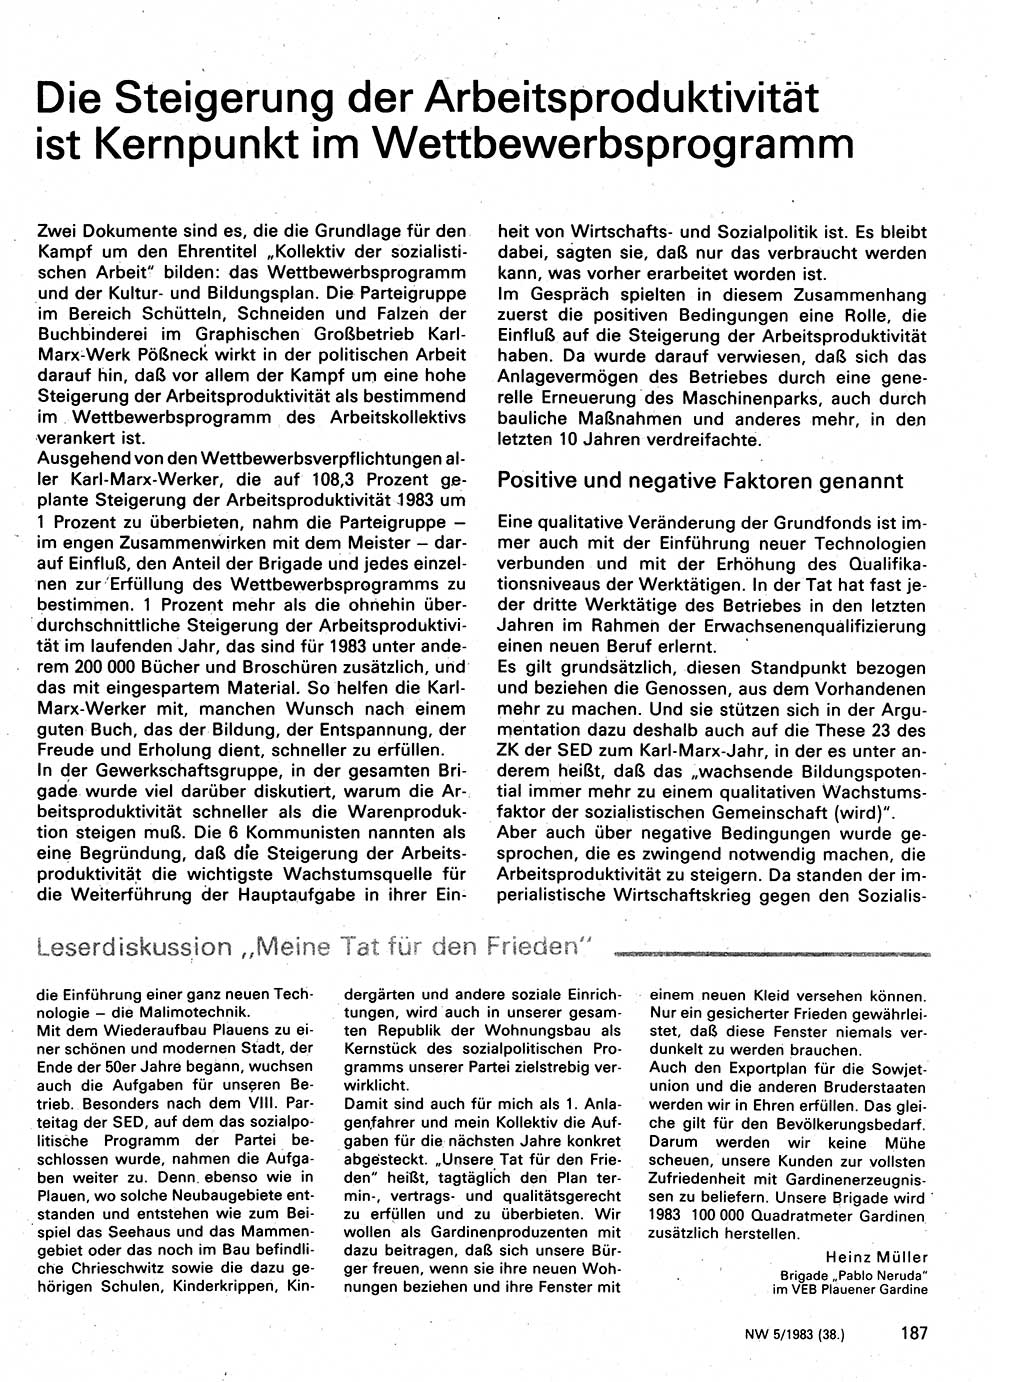 Neuer Weg (NW), Organ des Zentralkomitees (ZK) der SED (Sozialistische Einheitspartei Deutschlands) für Fragen des Parteilebens, 38. Jahrgang [Deutsche Demokratische Republik (DDR)] 1983, Seite 187 (NW ZK SED DDR 1983, S. 187)